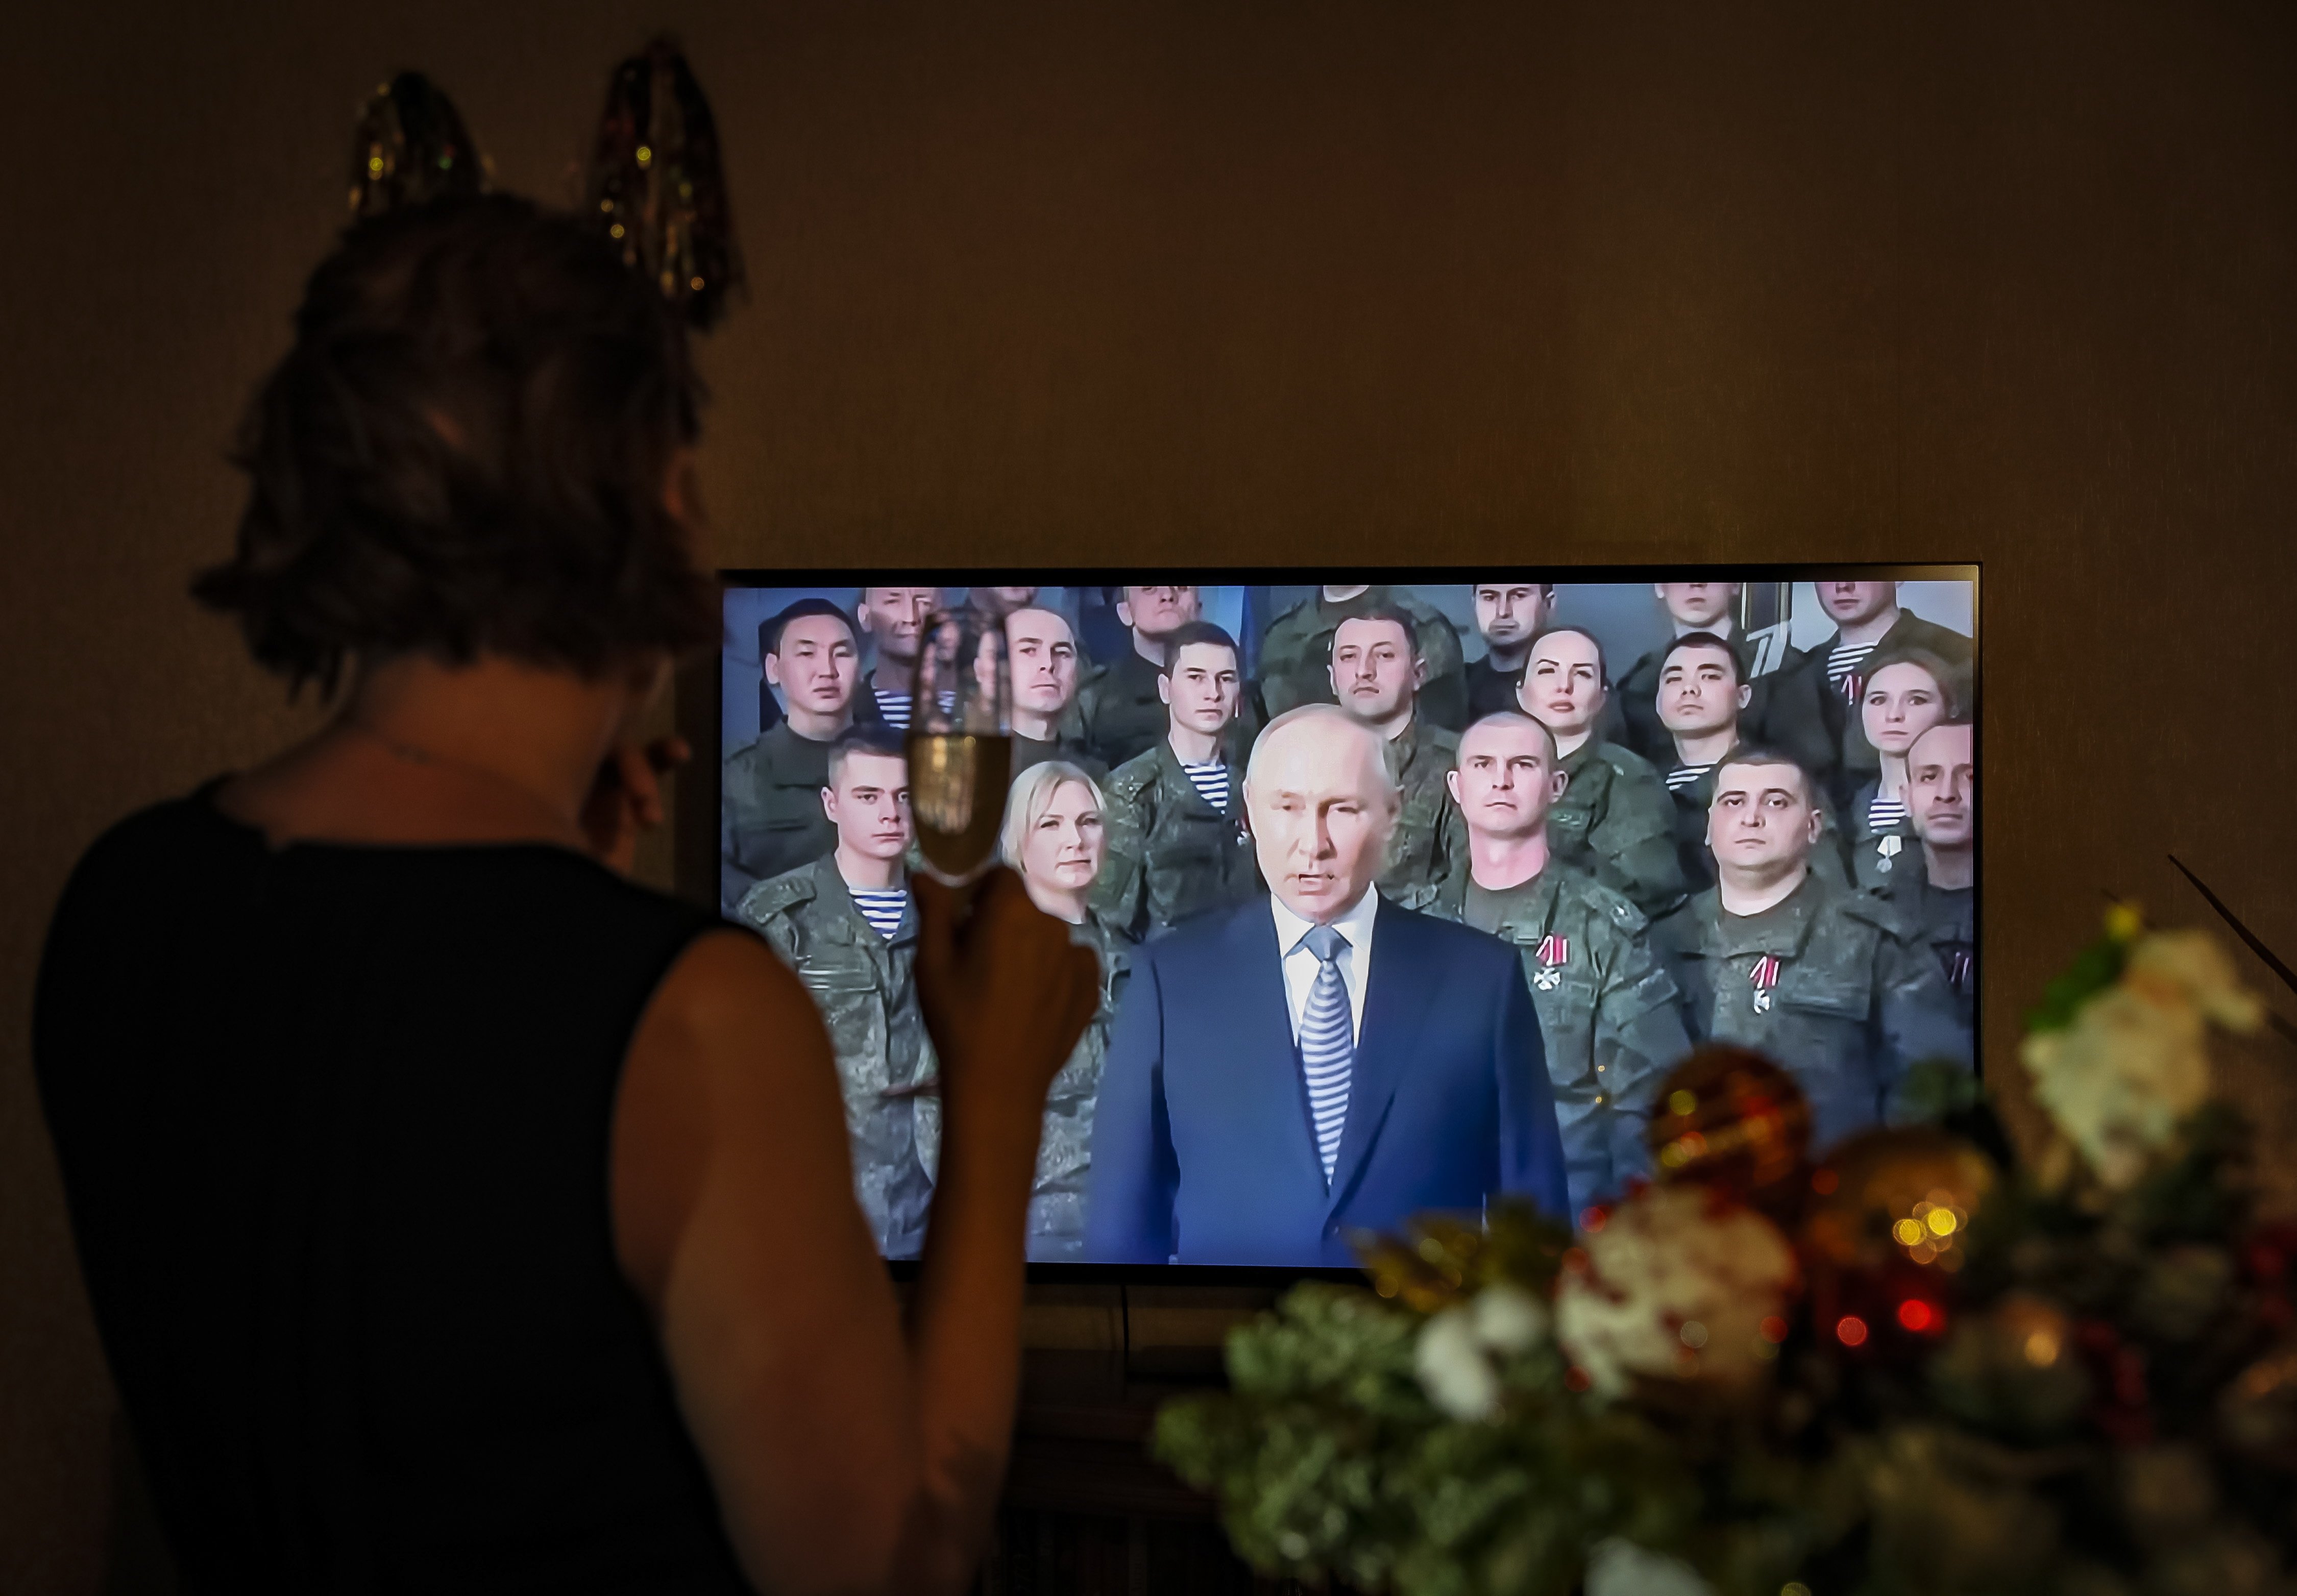 Creix el malestar entre les files de l'exèrcit rus per la gestió de Vladímir Putin